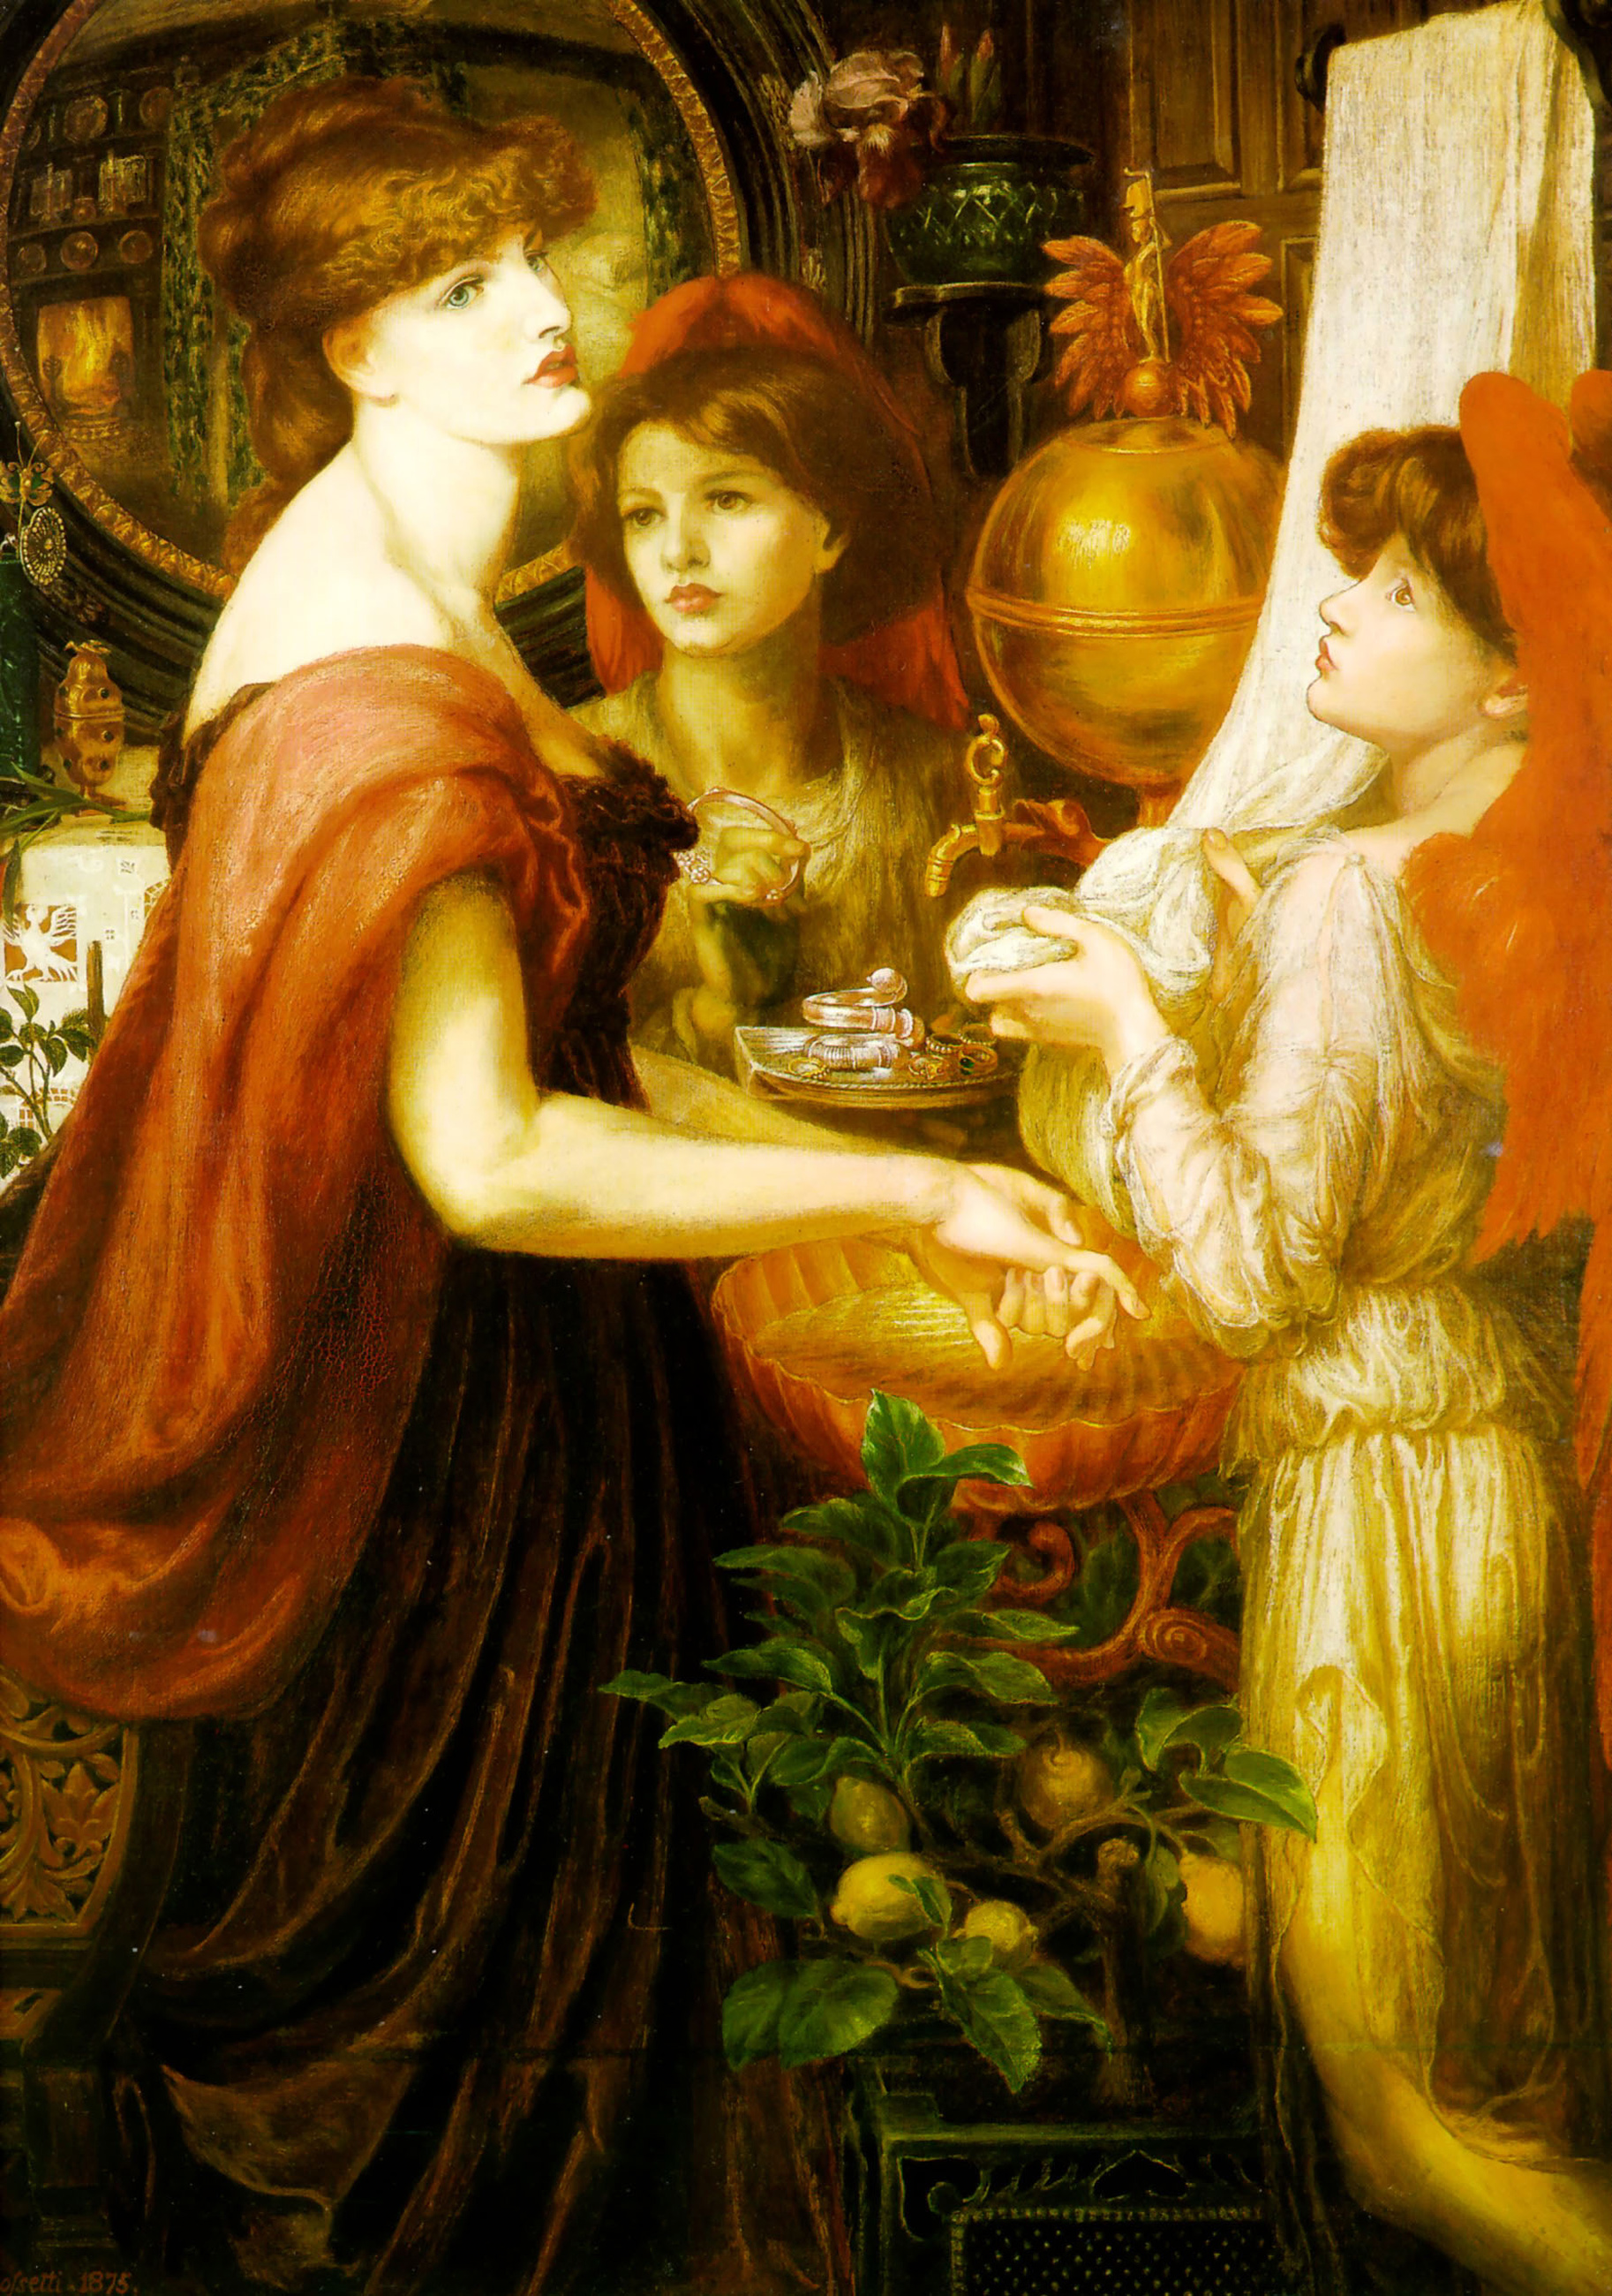 貝拉·馬諾 by Dante Gabriel Rossetti - 1875/1875 - 46 x h62 in 